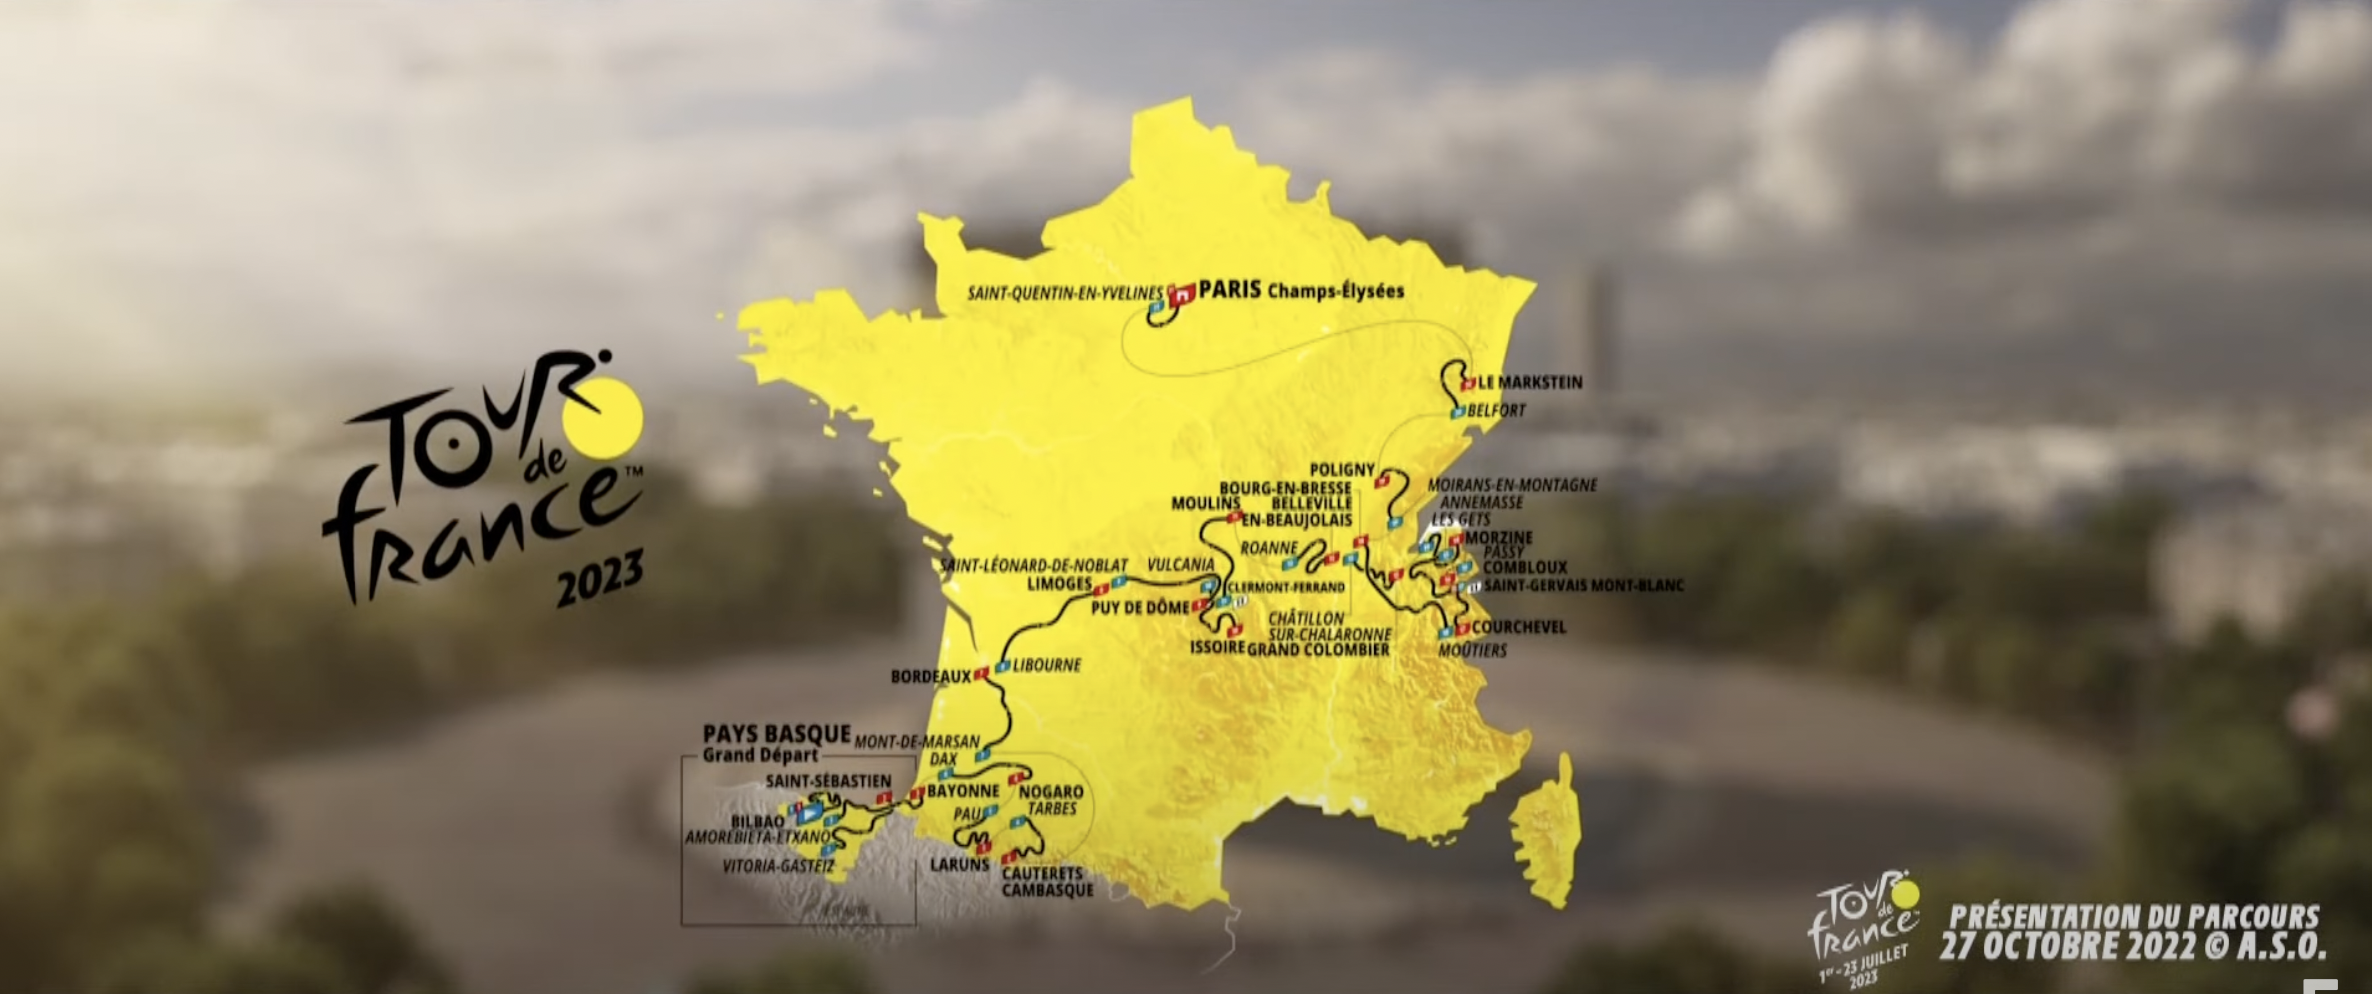 2023 Tour de France Route Announced